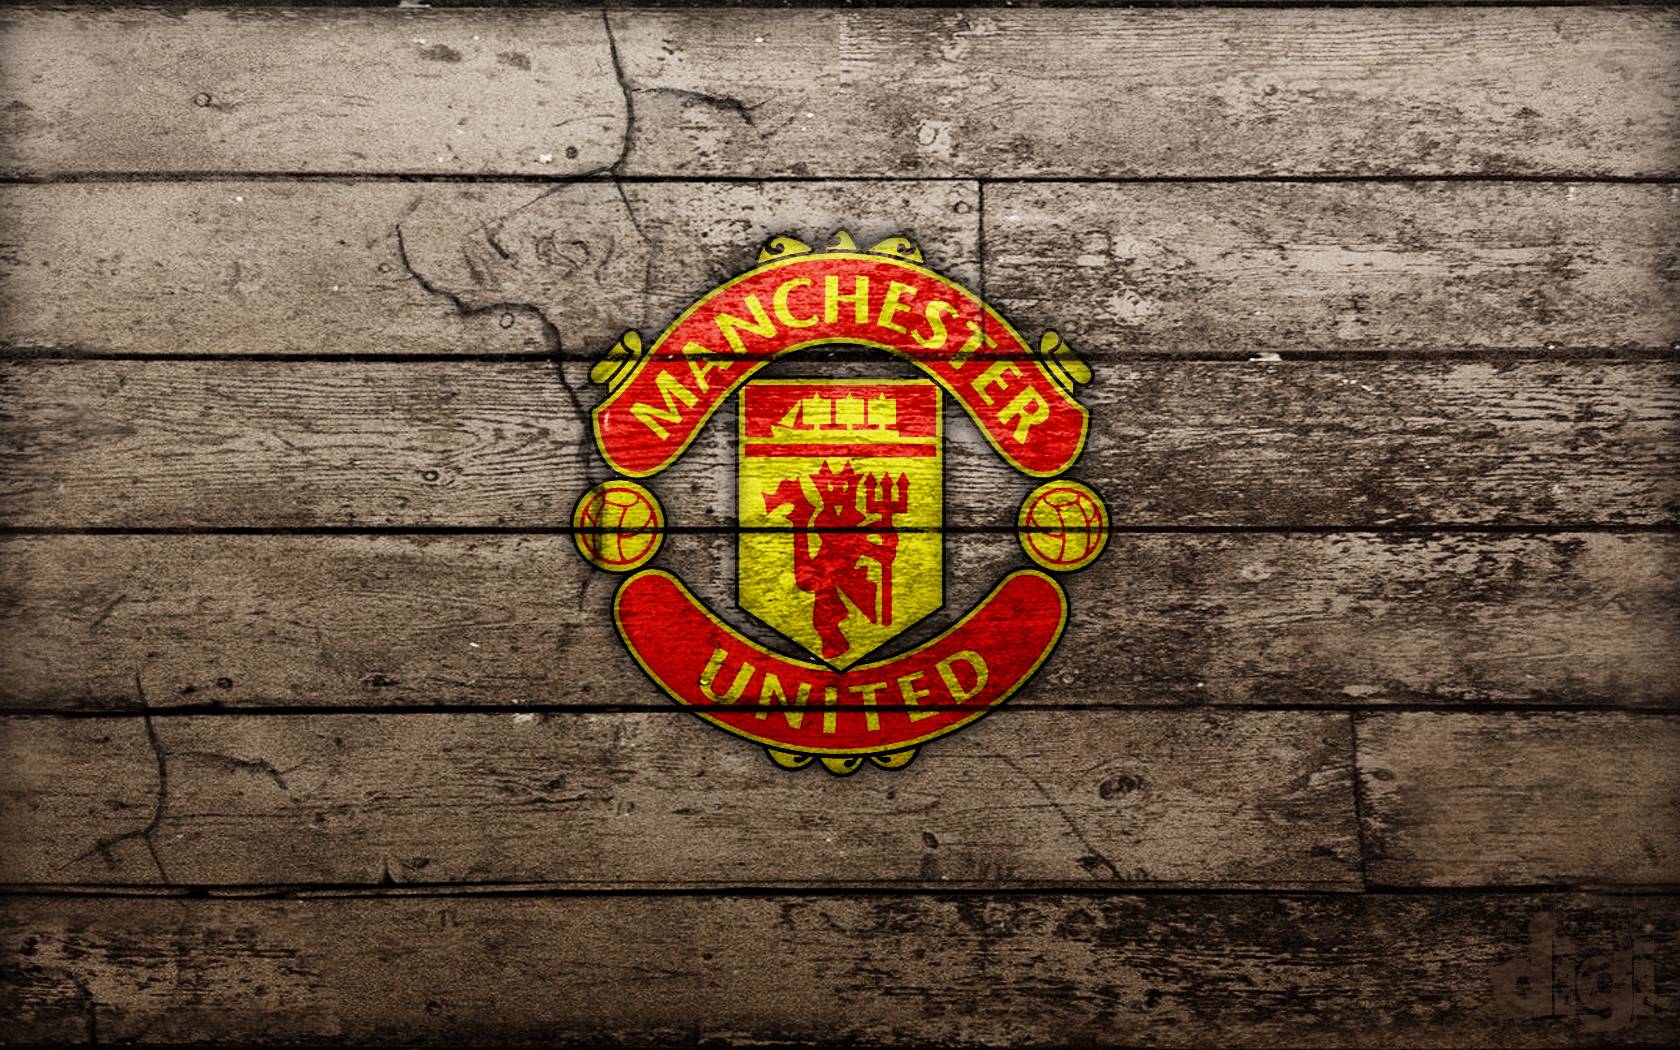 Tuyển tập hình nền Manchester United Full HD đẹp cho máy tính VFOVN